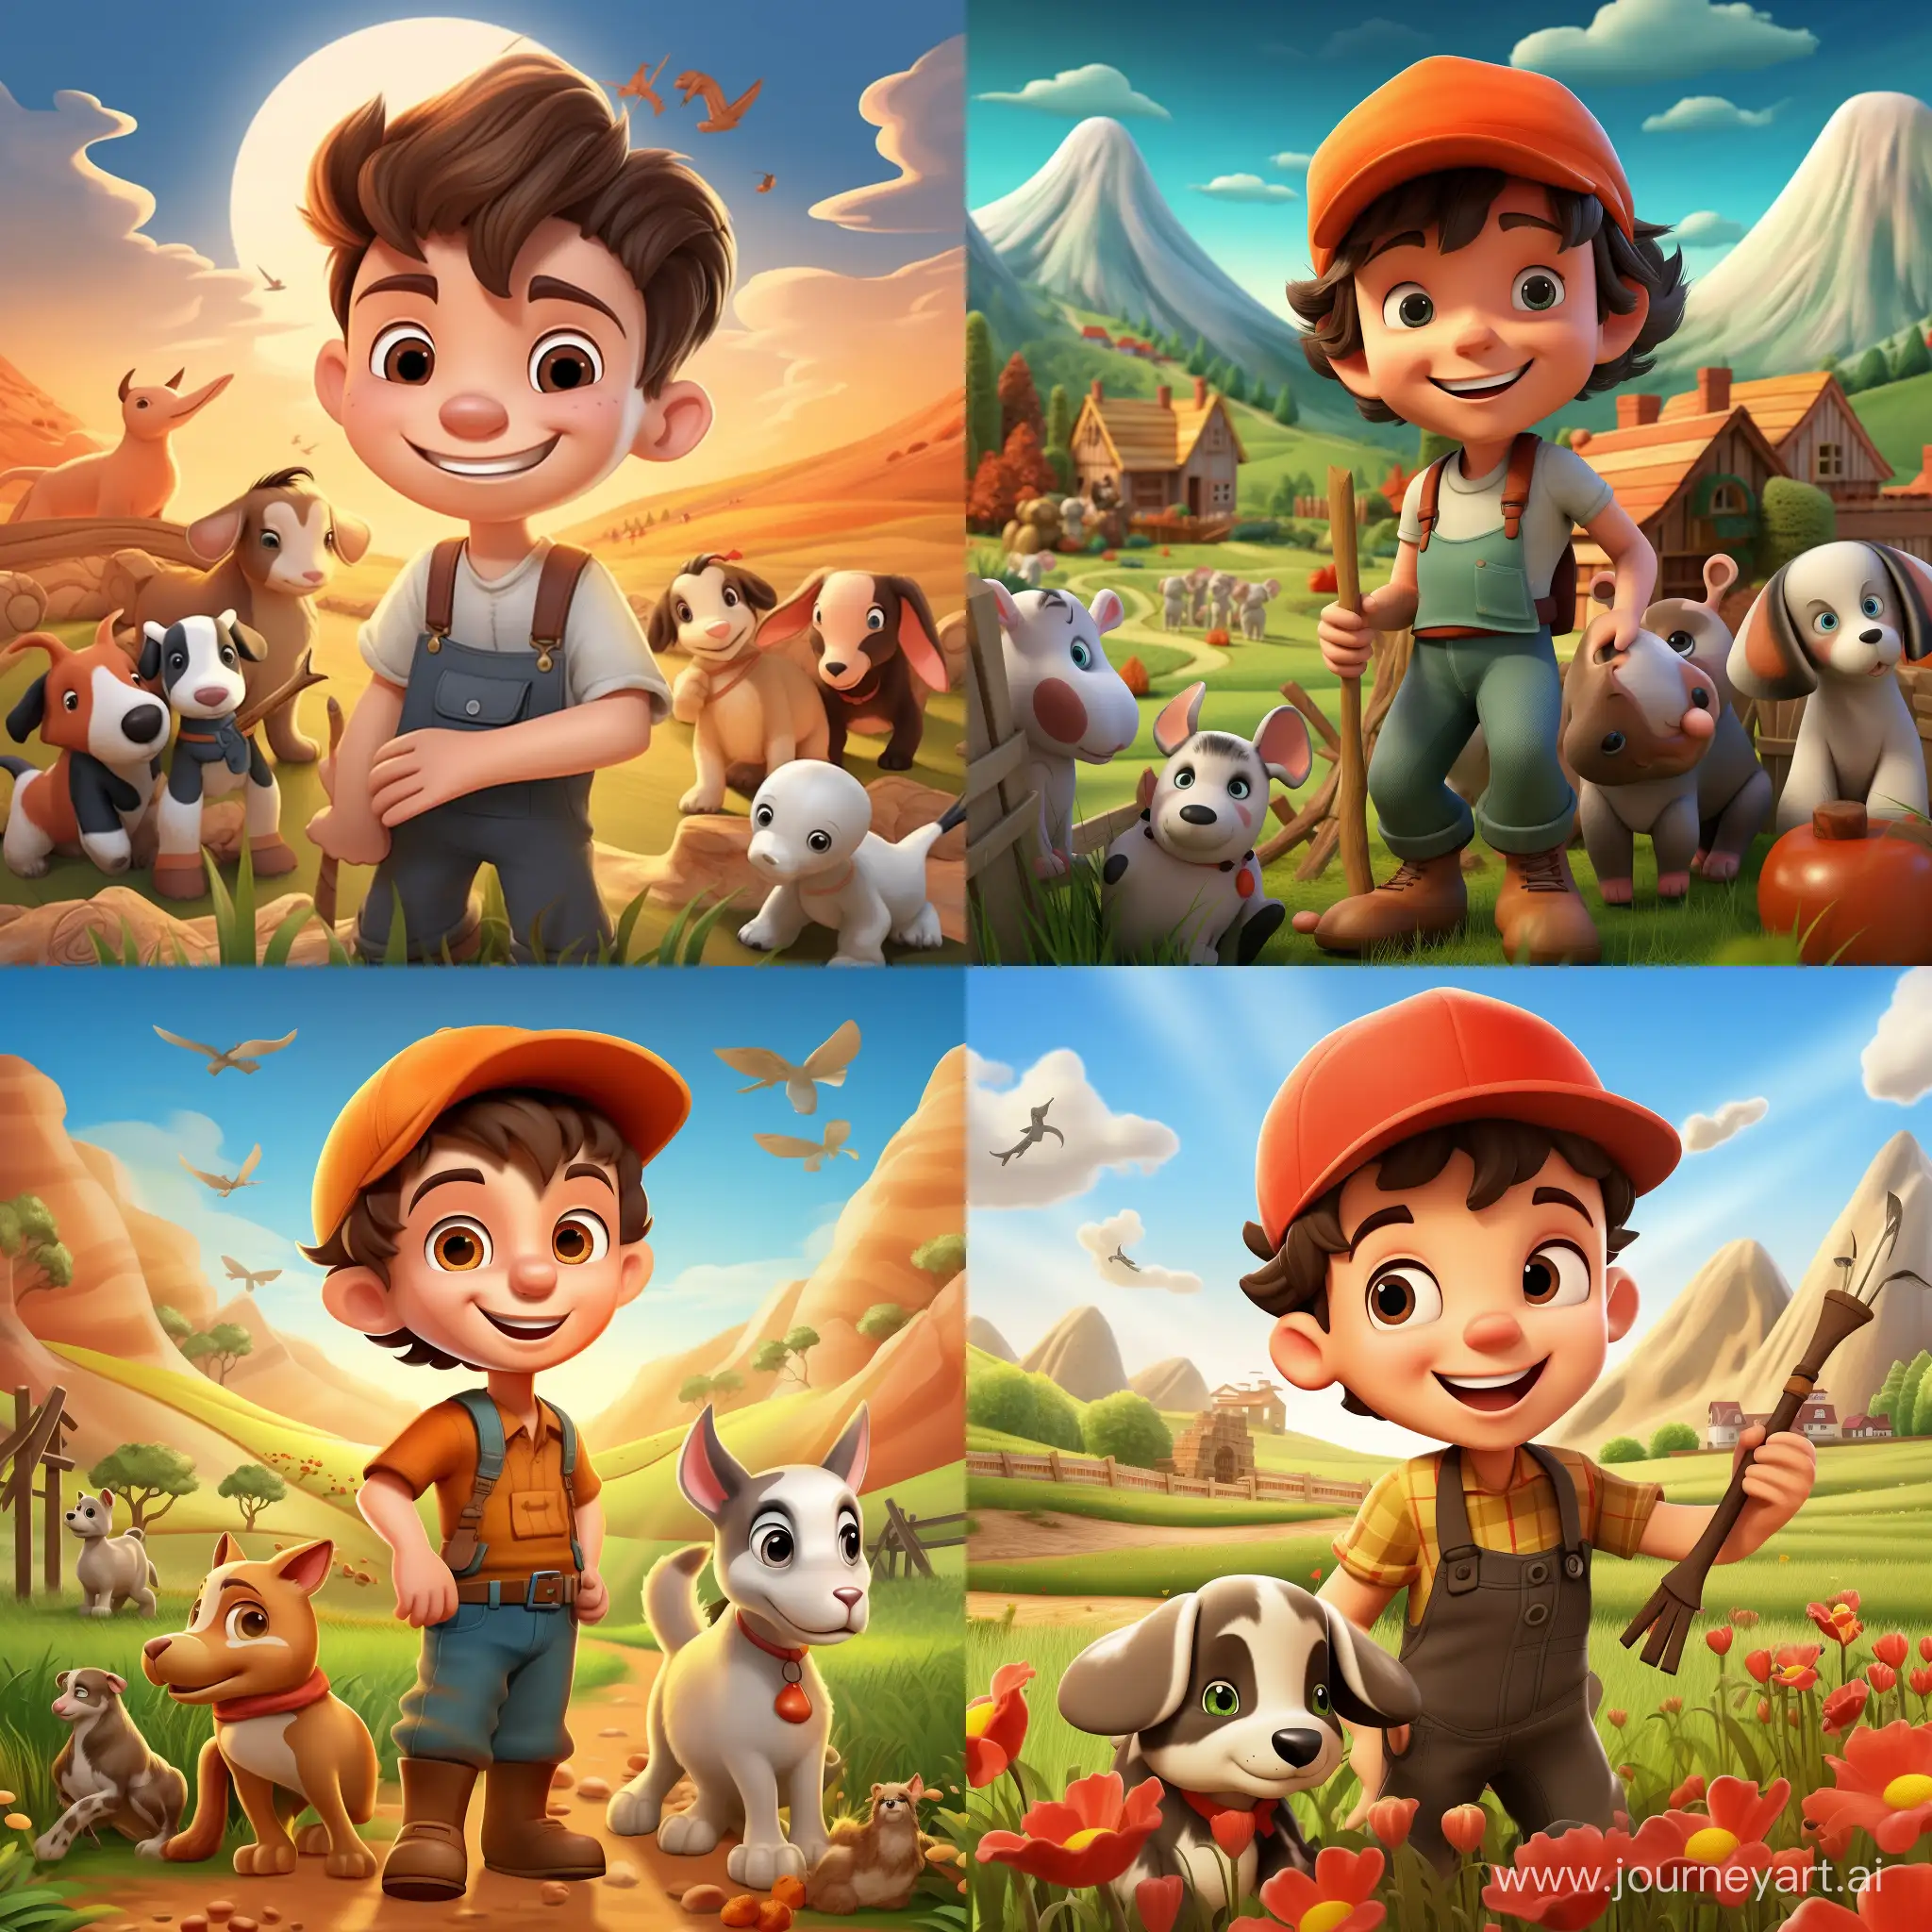 нарисуй мальчика 3д фермера с животными который счастлив в мультяшном стиле и фон ферма и горы